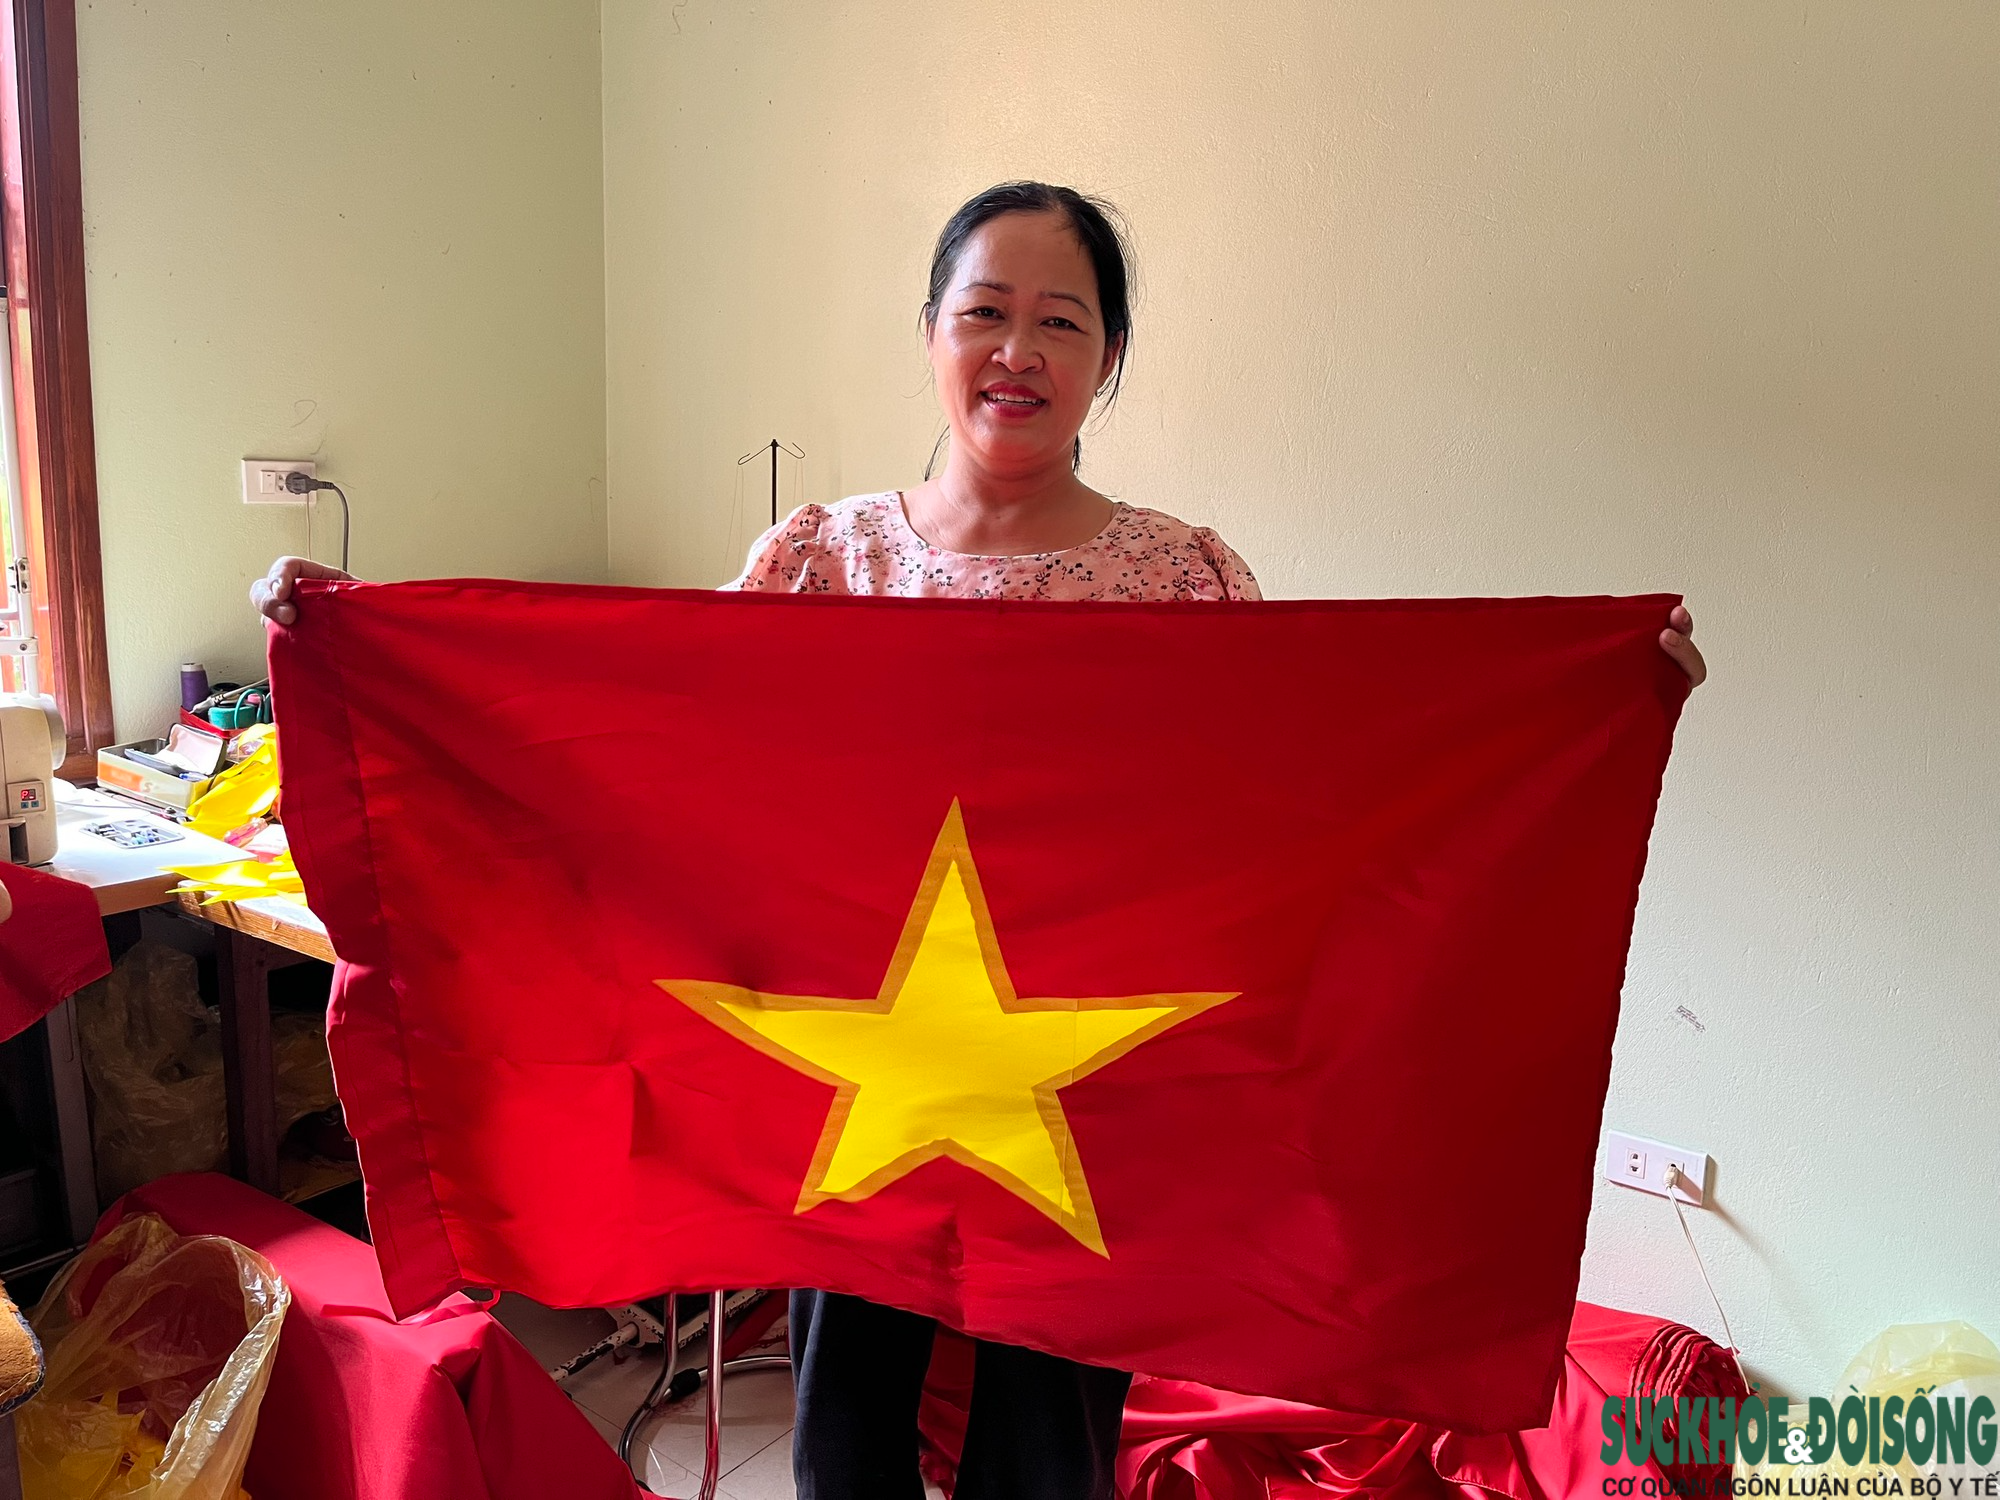 Thiêng liêng làng nghề may cờ Tổ Quốc tại ngoại thành Hà Nội - Ảnh 1.